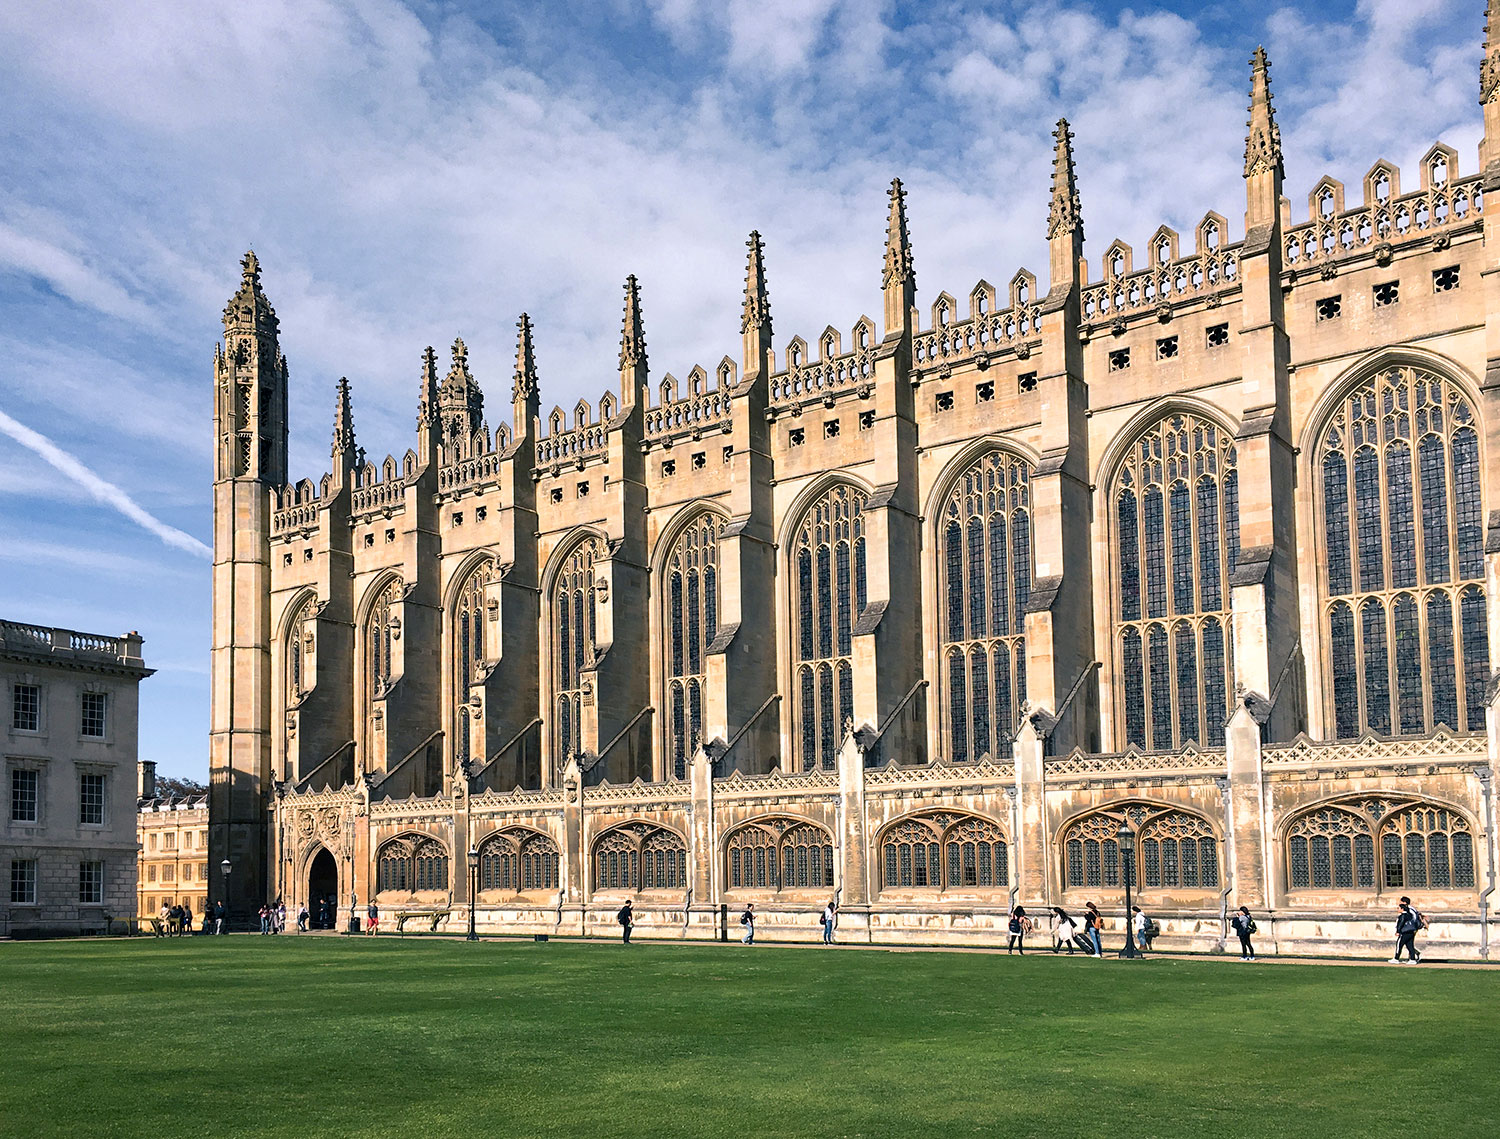 Chapelle de King's College, Université de Cambridge, Cambridge, Angleterre / King's College Chapel, Cambridge, England, UK.